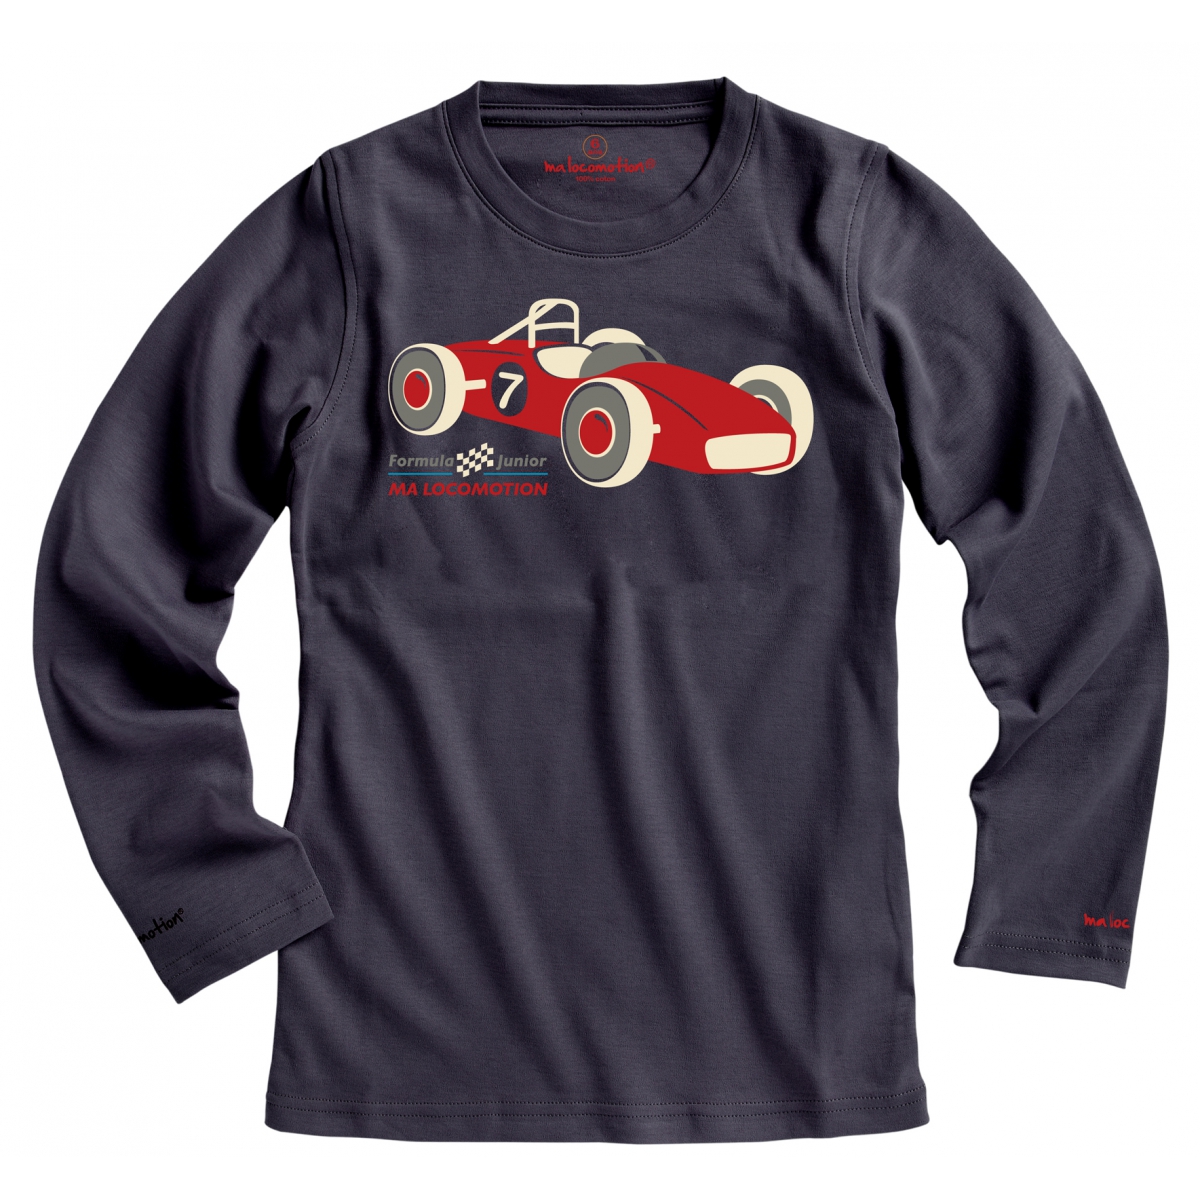 Racing car t-shirt - anthracite grey